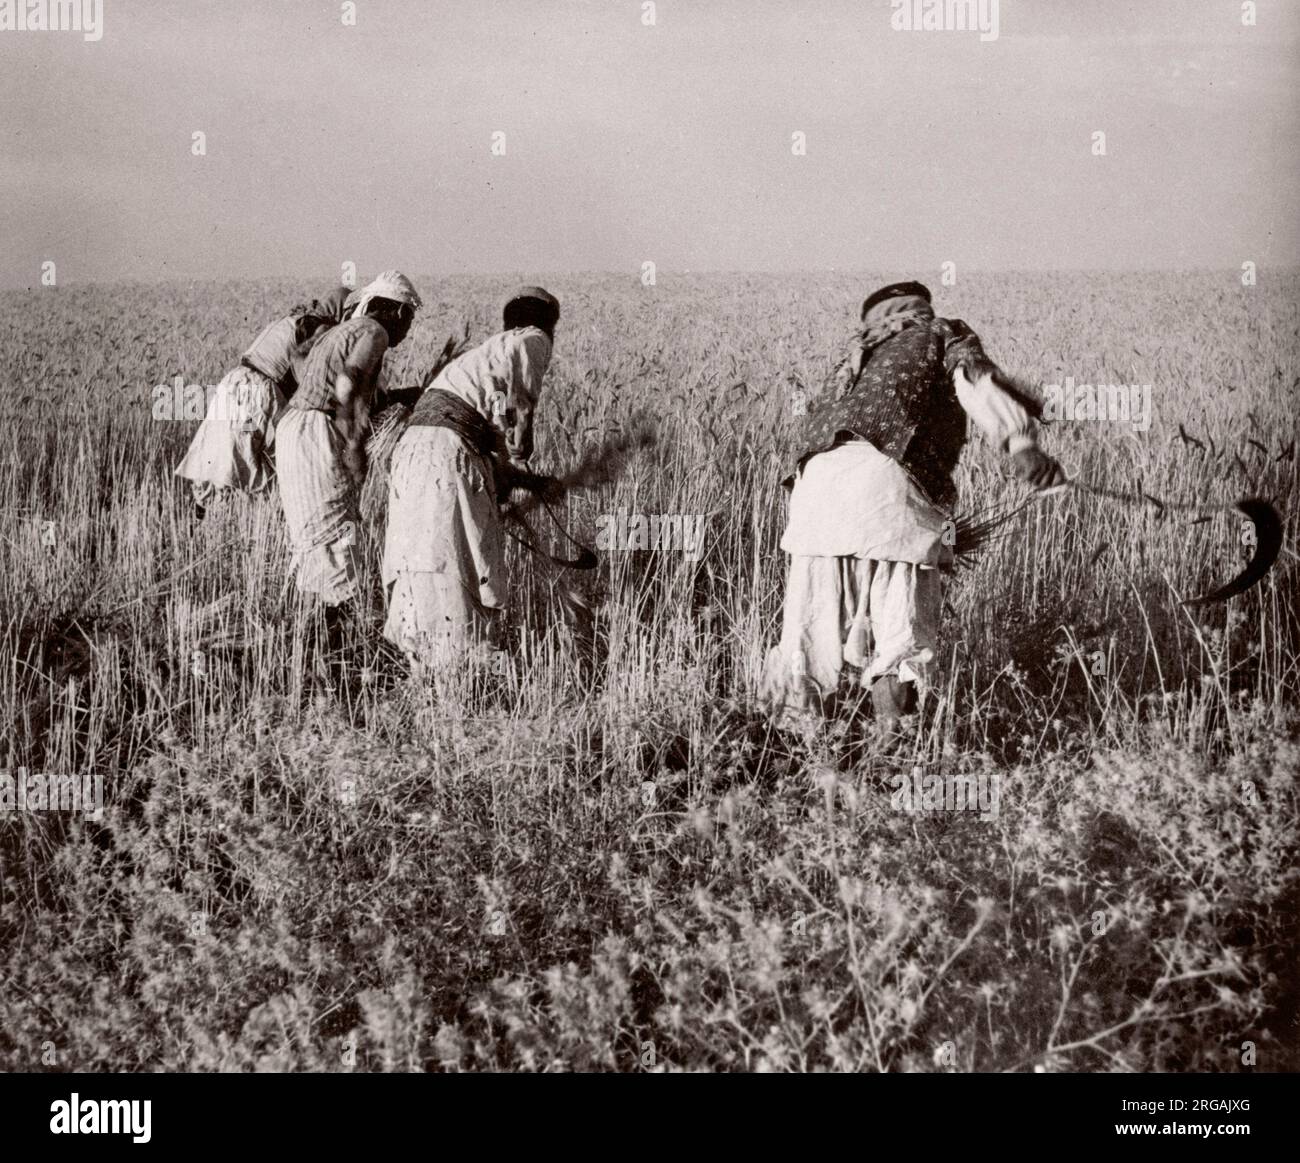 1943 - récolte des récoltes à la main avec des scythes près de Kamechlie, en Syrie Photographie par un officier de recrutement de l'armée britannique stationné en Afrique de l'est et au Moyen-Orient pendant la Seconde Guerre mondiale Banque D'Images